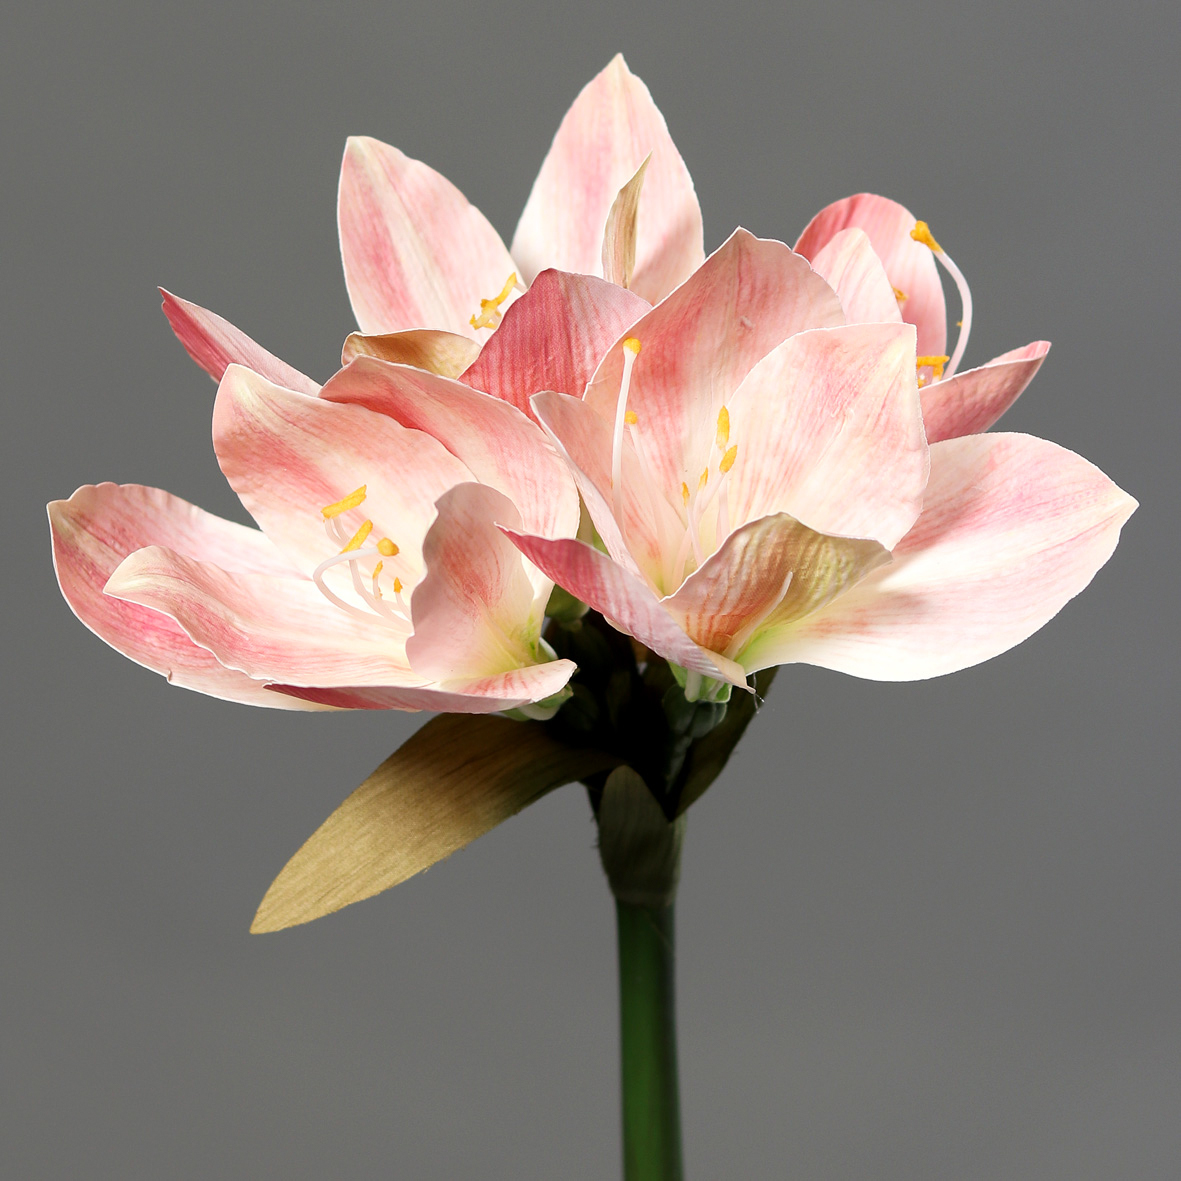 Amaryllis Real Touch 36cm rosa-creme DP Kunstblumen künstliche Blumen Pflanzen